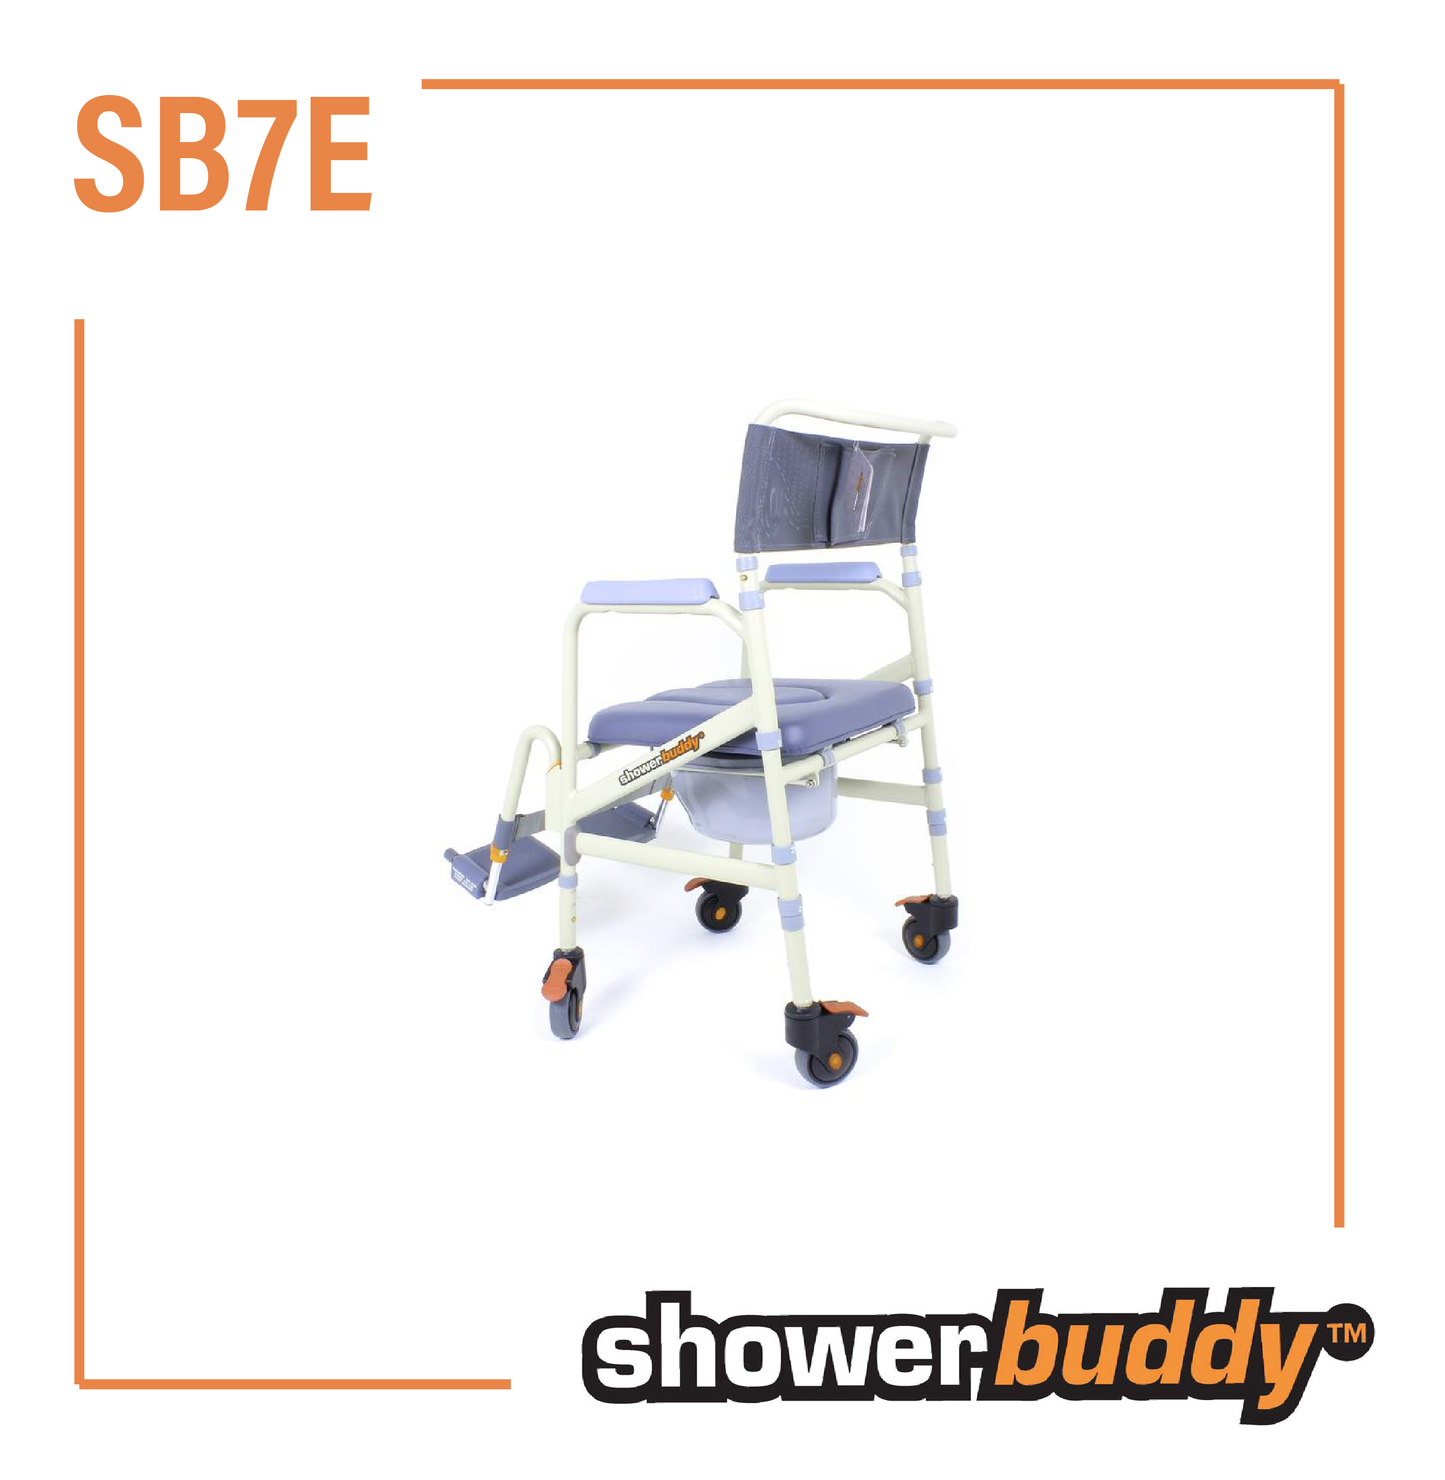 SB7E showerbuddy Eco Traveller Foldable Shower Commode